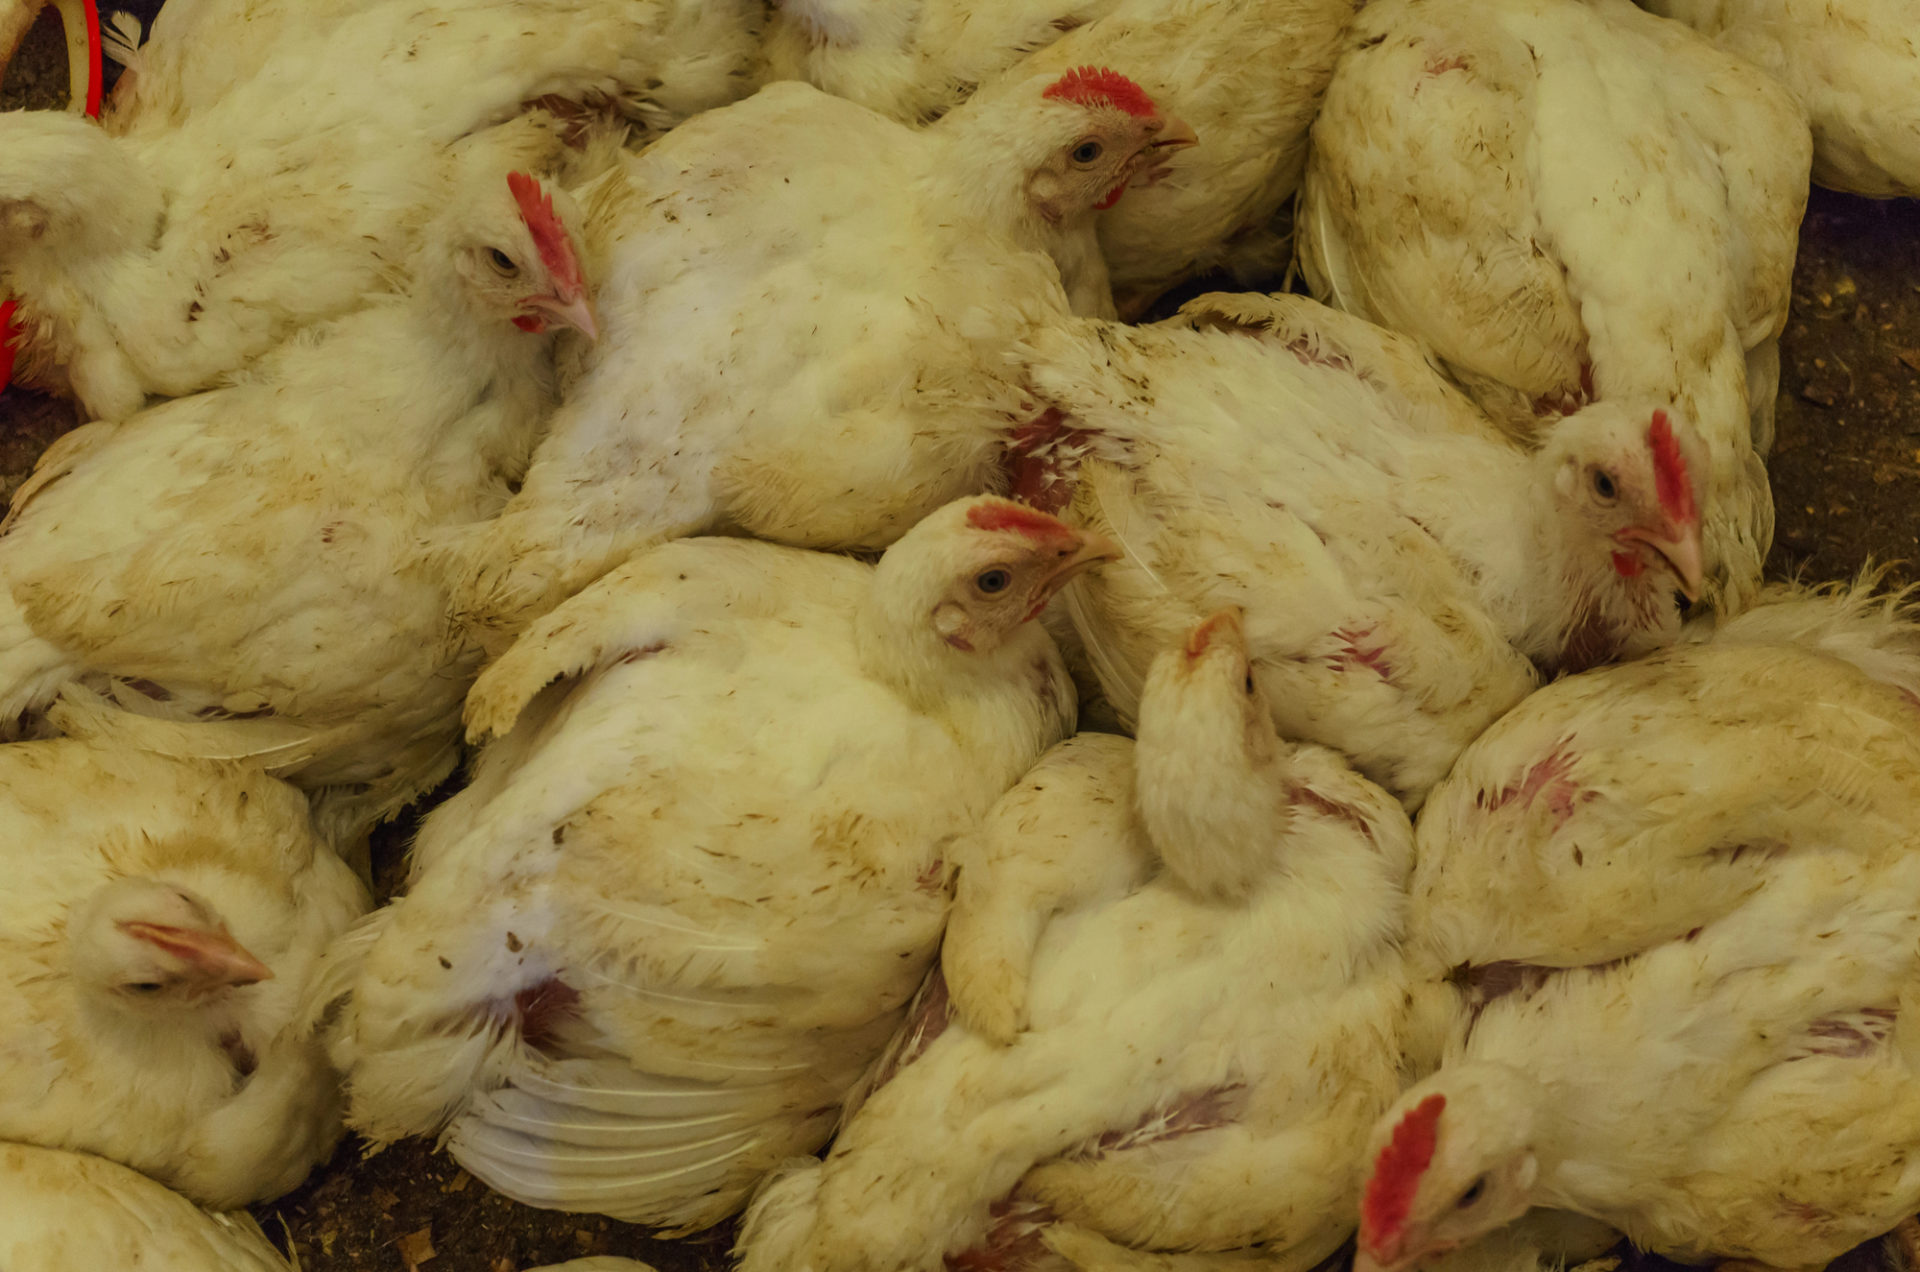 allevamento avicolo allevamento intensivo polli animali carne proteine